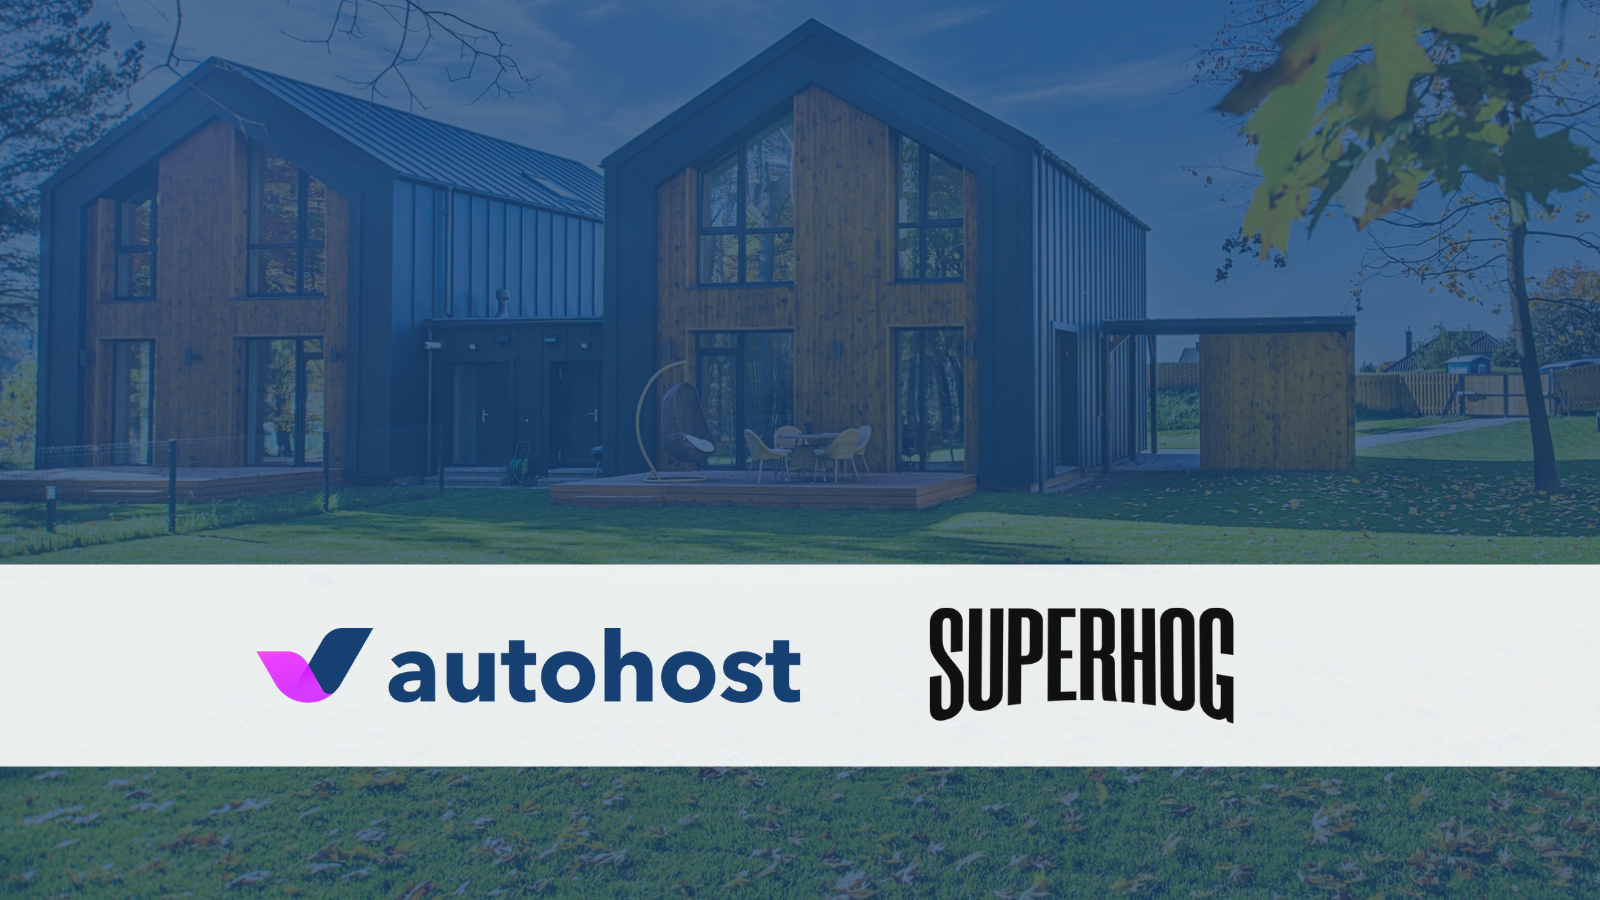 autohost superhog featured image